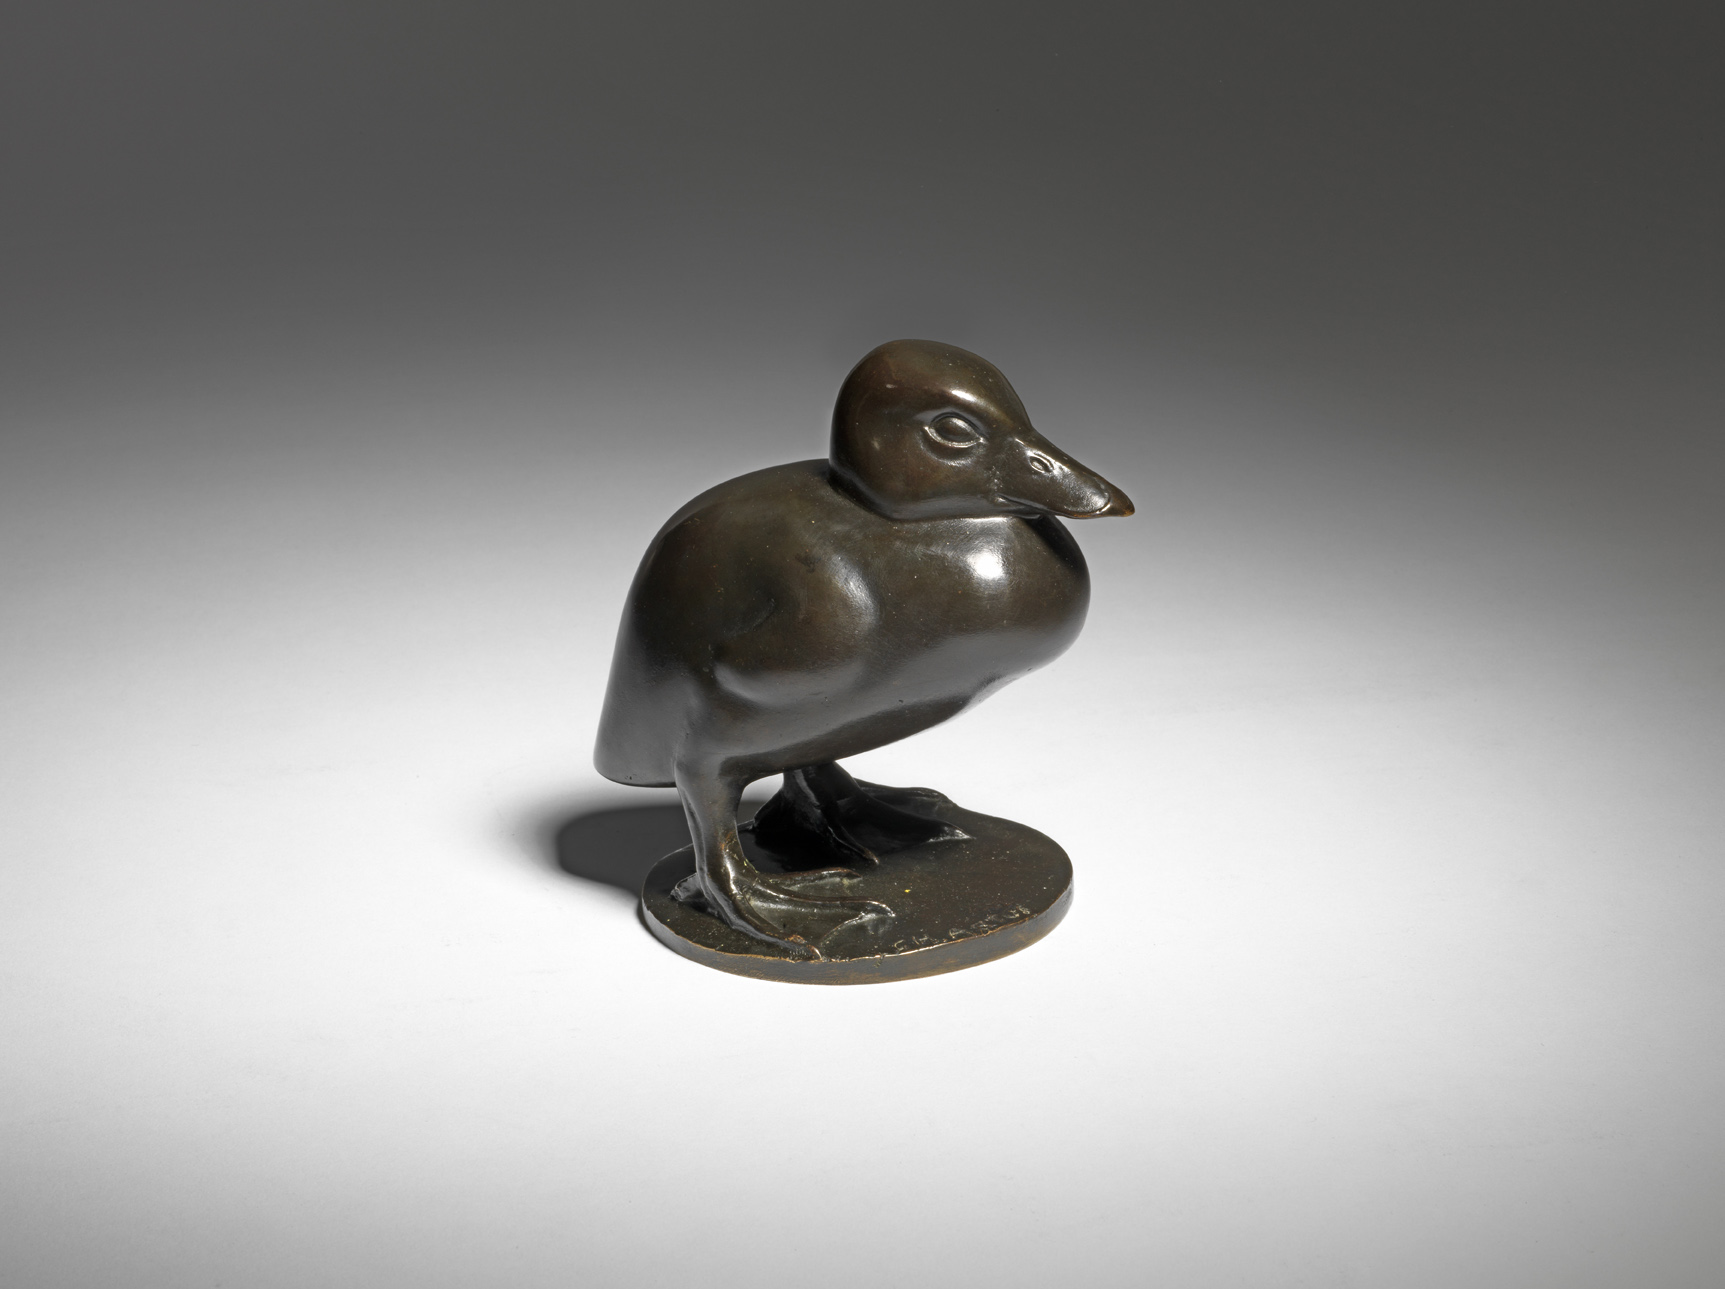 Duckling c. 1930